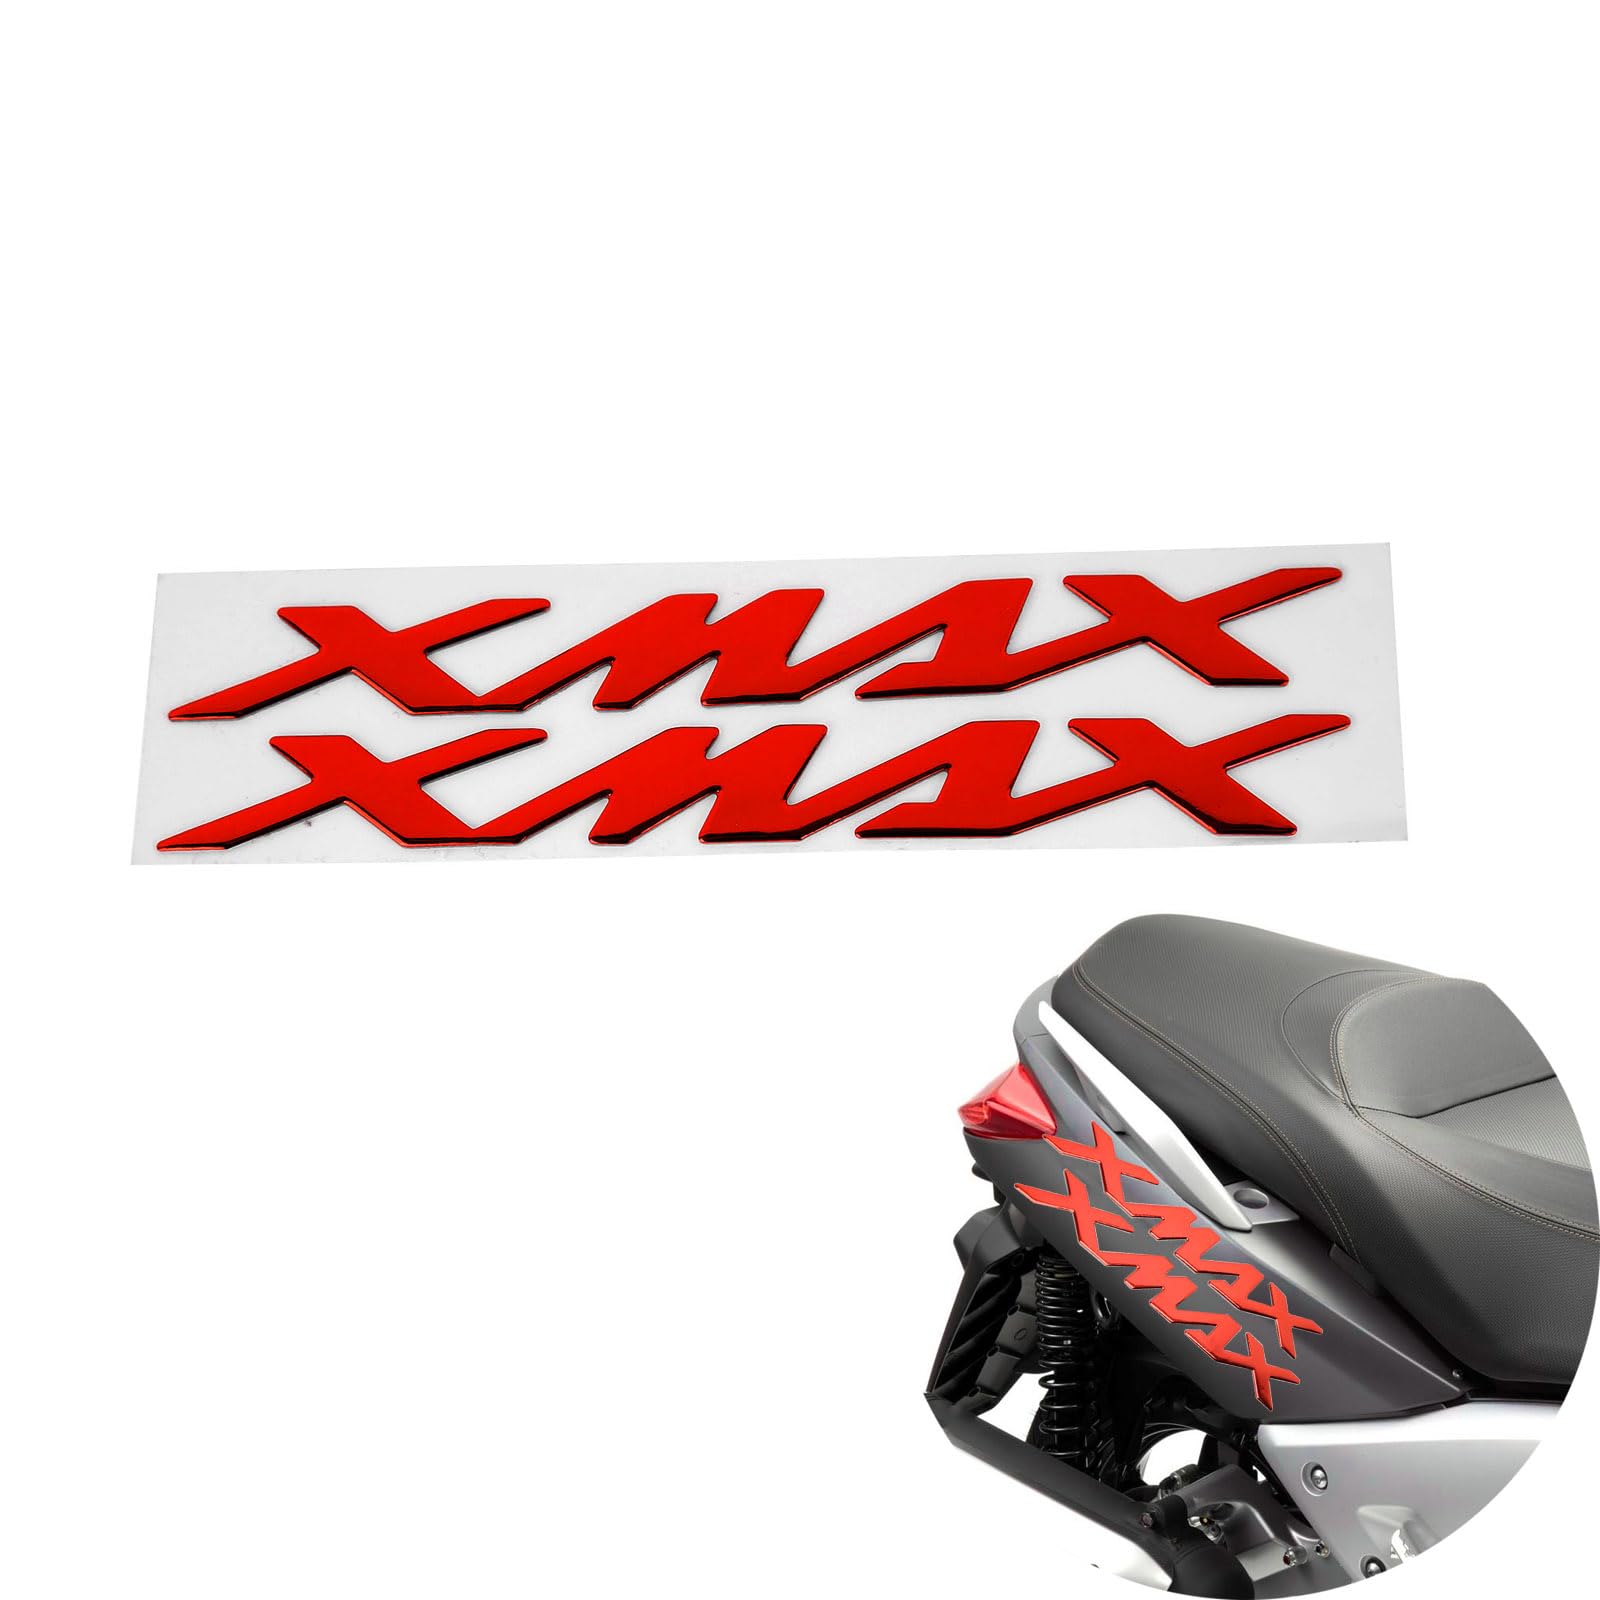 Motorrad Aufkleber, 1 Paar Motorrad Emblem Aufkleber Aufkleber in 3 Größen kompatibel mit Yamaha X-Max Xmax 125 250 400 (Rot) von BIKING